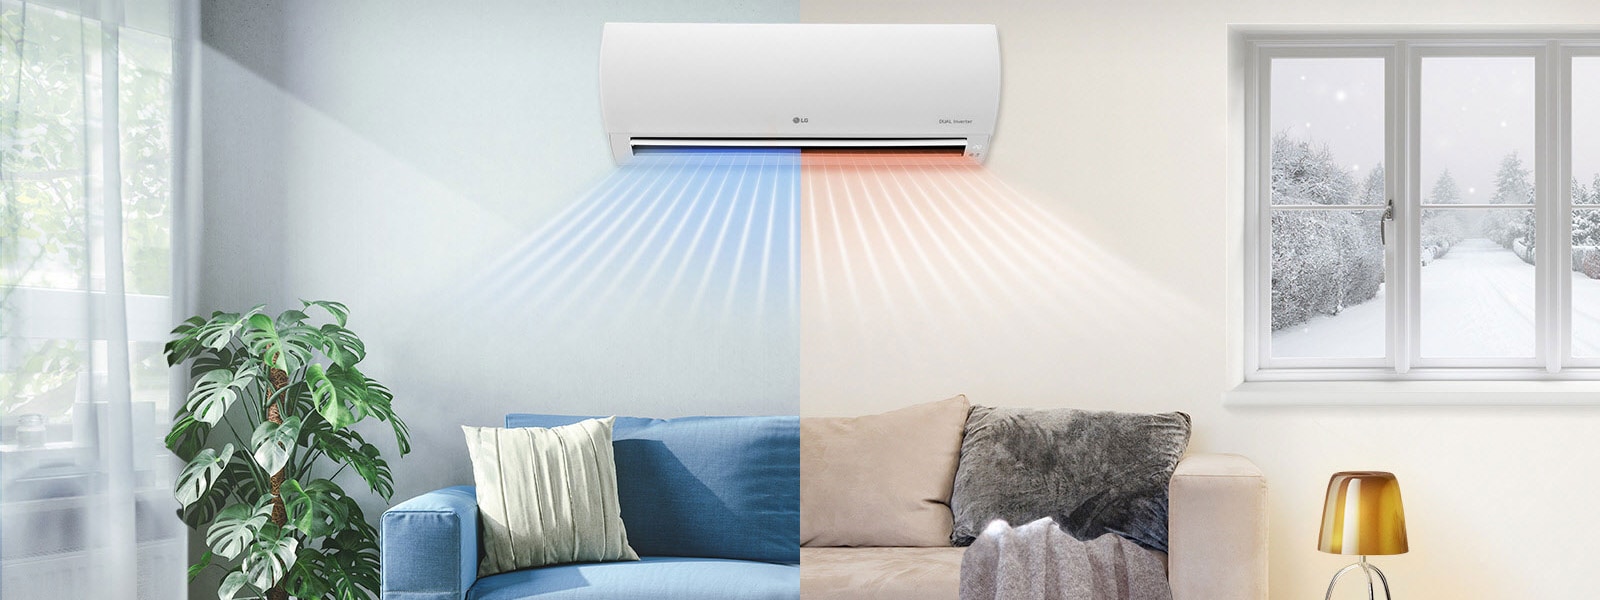 Ideale temperatuurinstellingen voor je airconditioner1